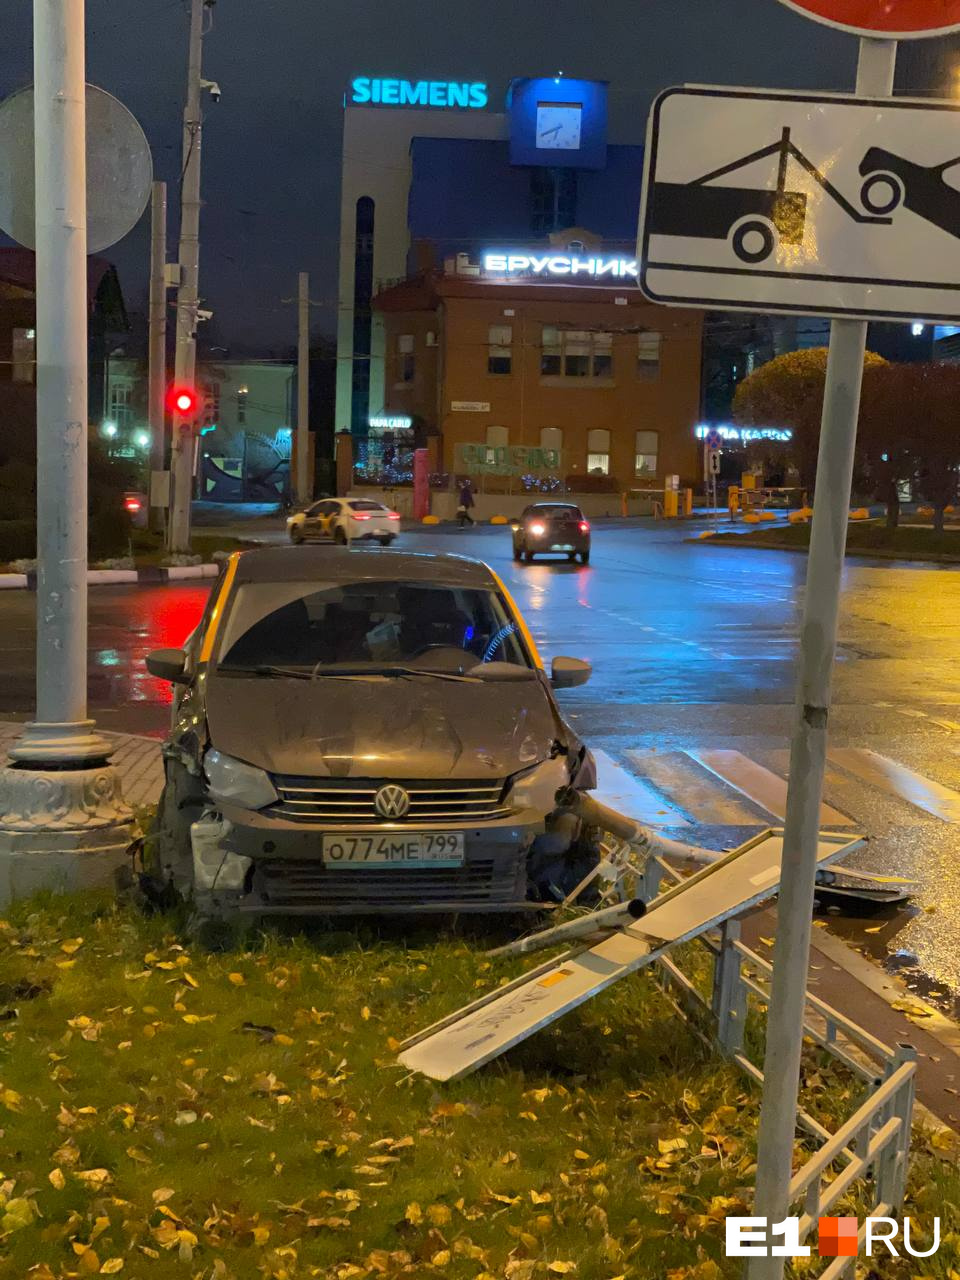 В центре Екатеринбурга водитель каршеринга сшиб дорожные знаки, разбил авто и скрылся: видео